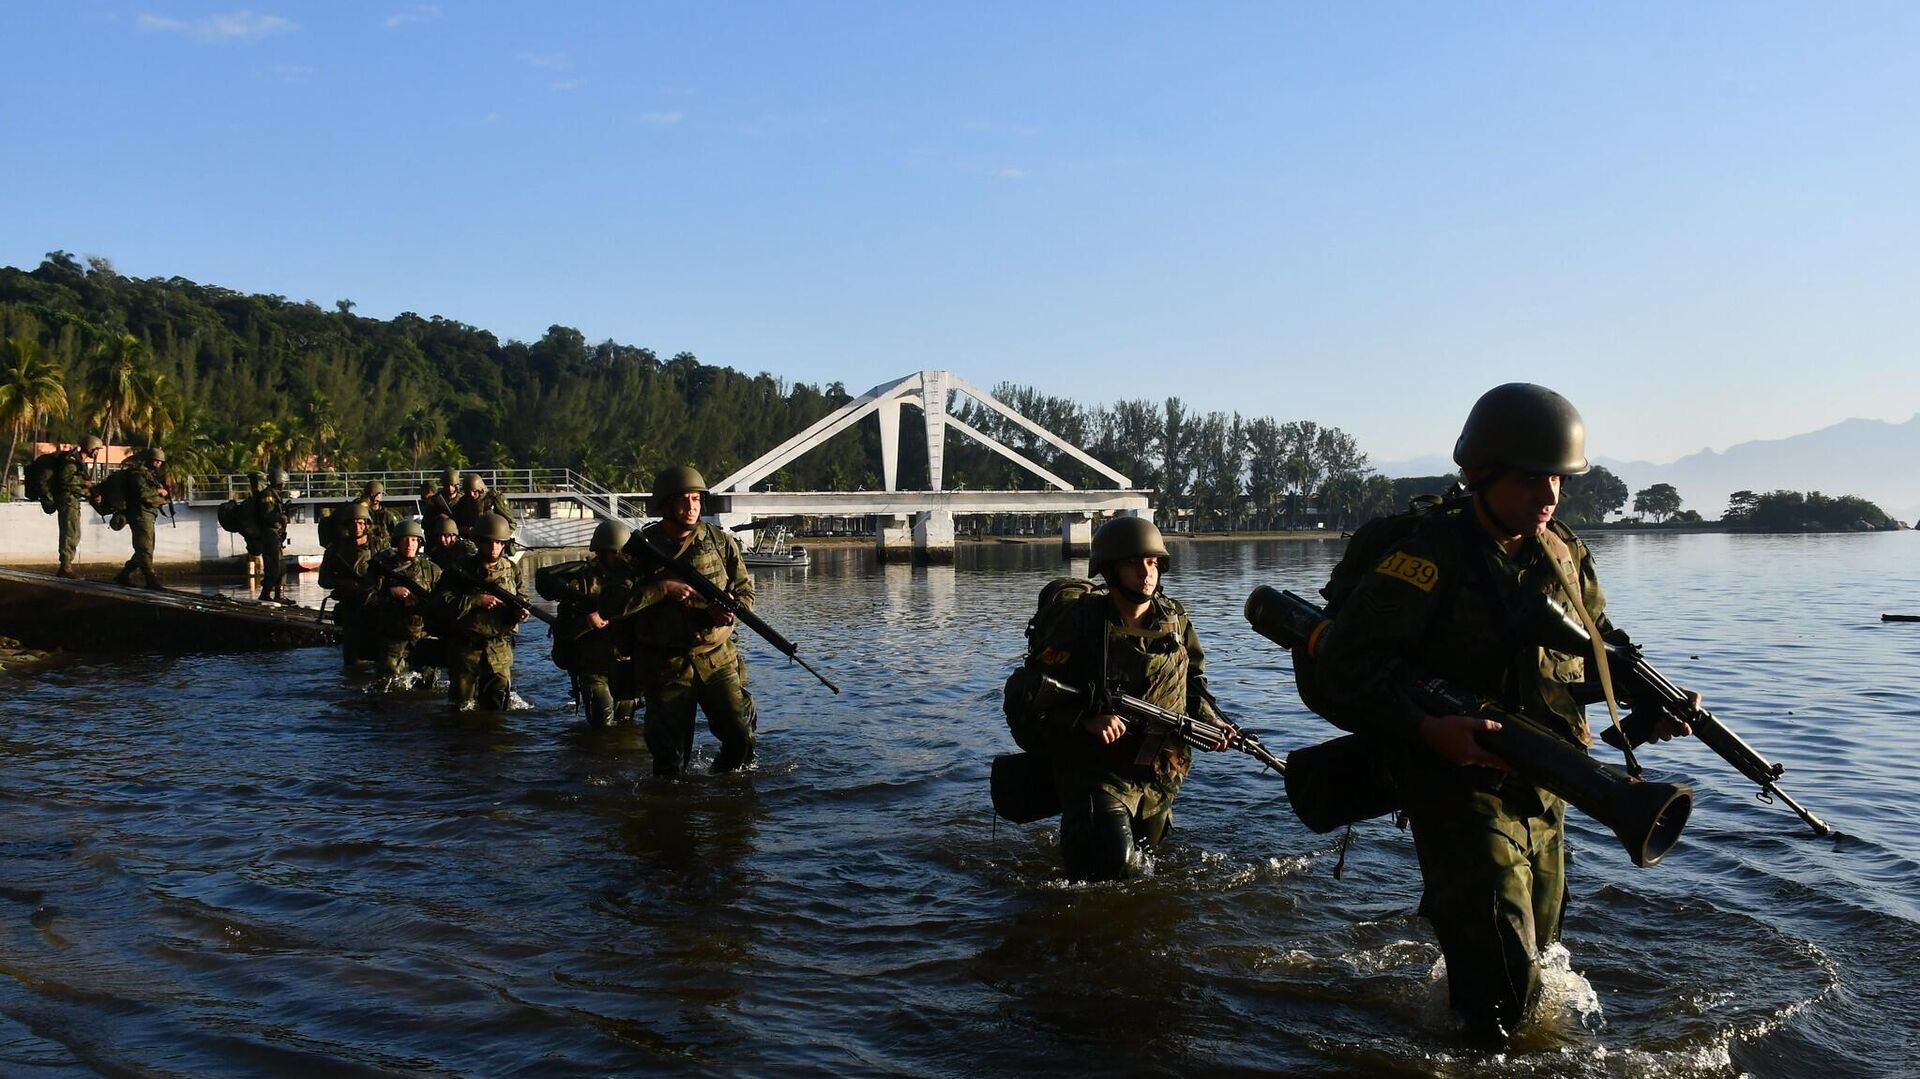 Exército dobrará efetivo na fronteira com Venezuela e Guiana, diz